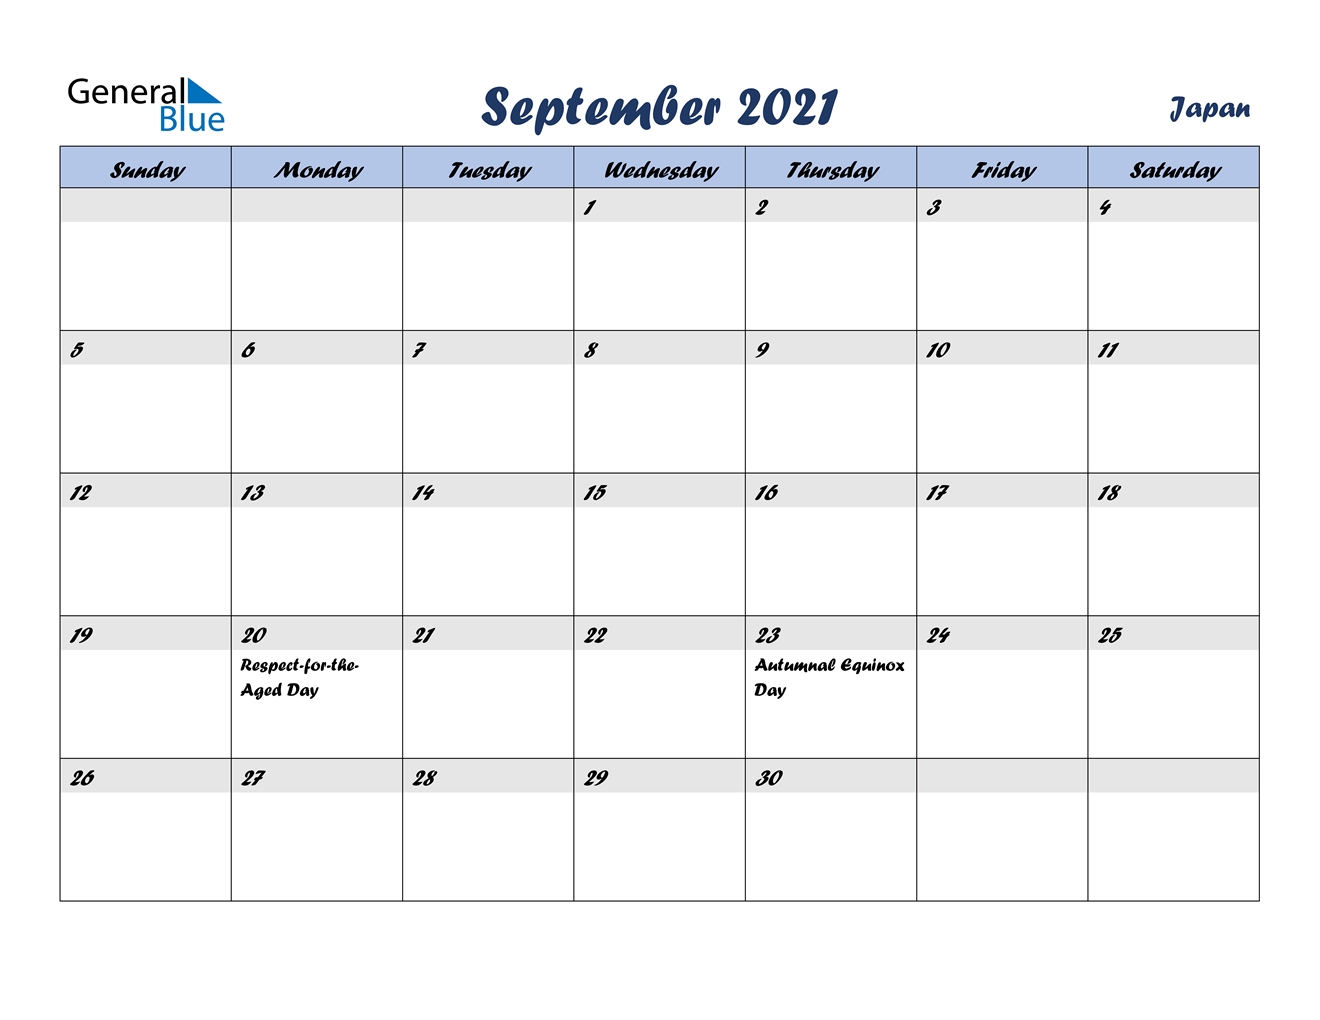 September 2021 Calendar - Japan Calendar Events September 2021